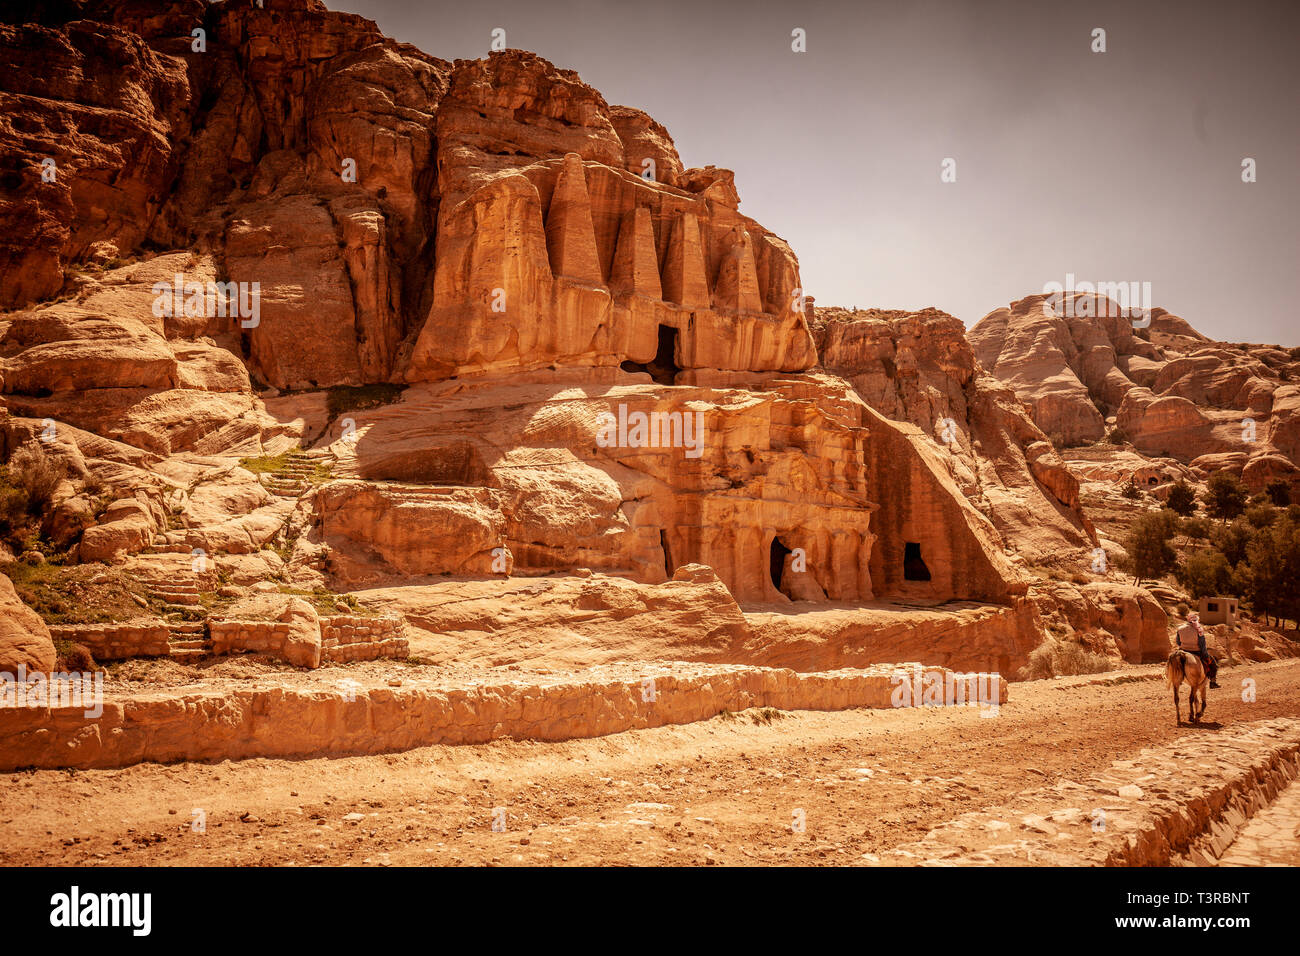 Petra, Jordanien. Die zum UNESCO-Weltkulturerbe zählt. Blick auf eine der unzähligen Tempeln in der alten Stadt, ein beliebtes Ziel für Touristen aus aller Welt. Stockfoto